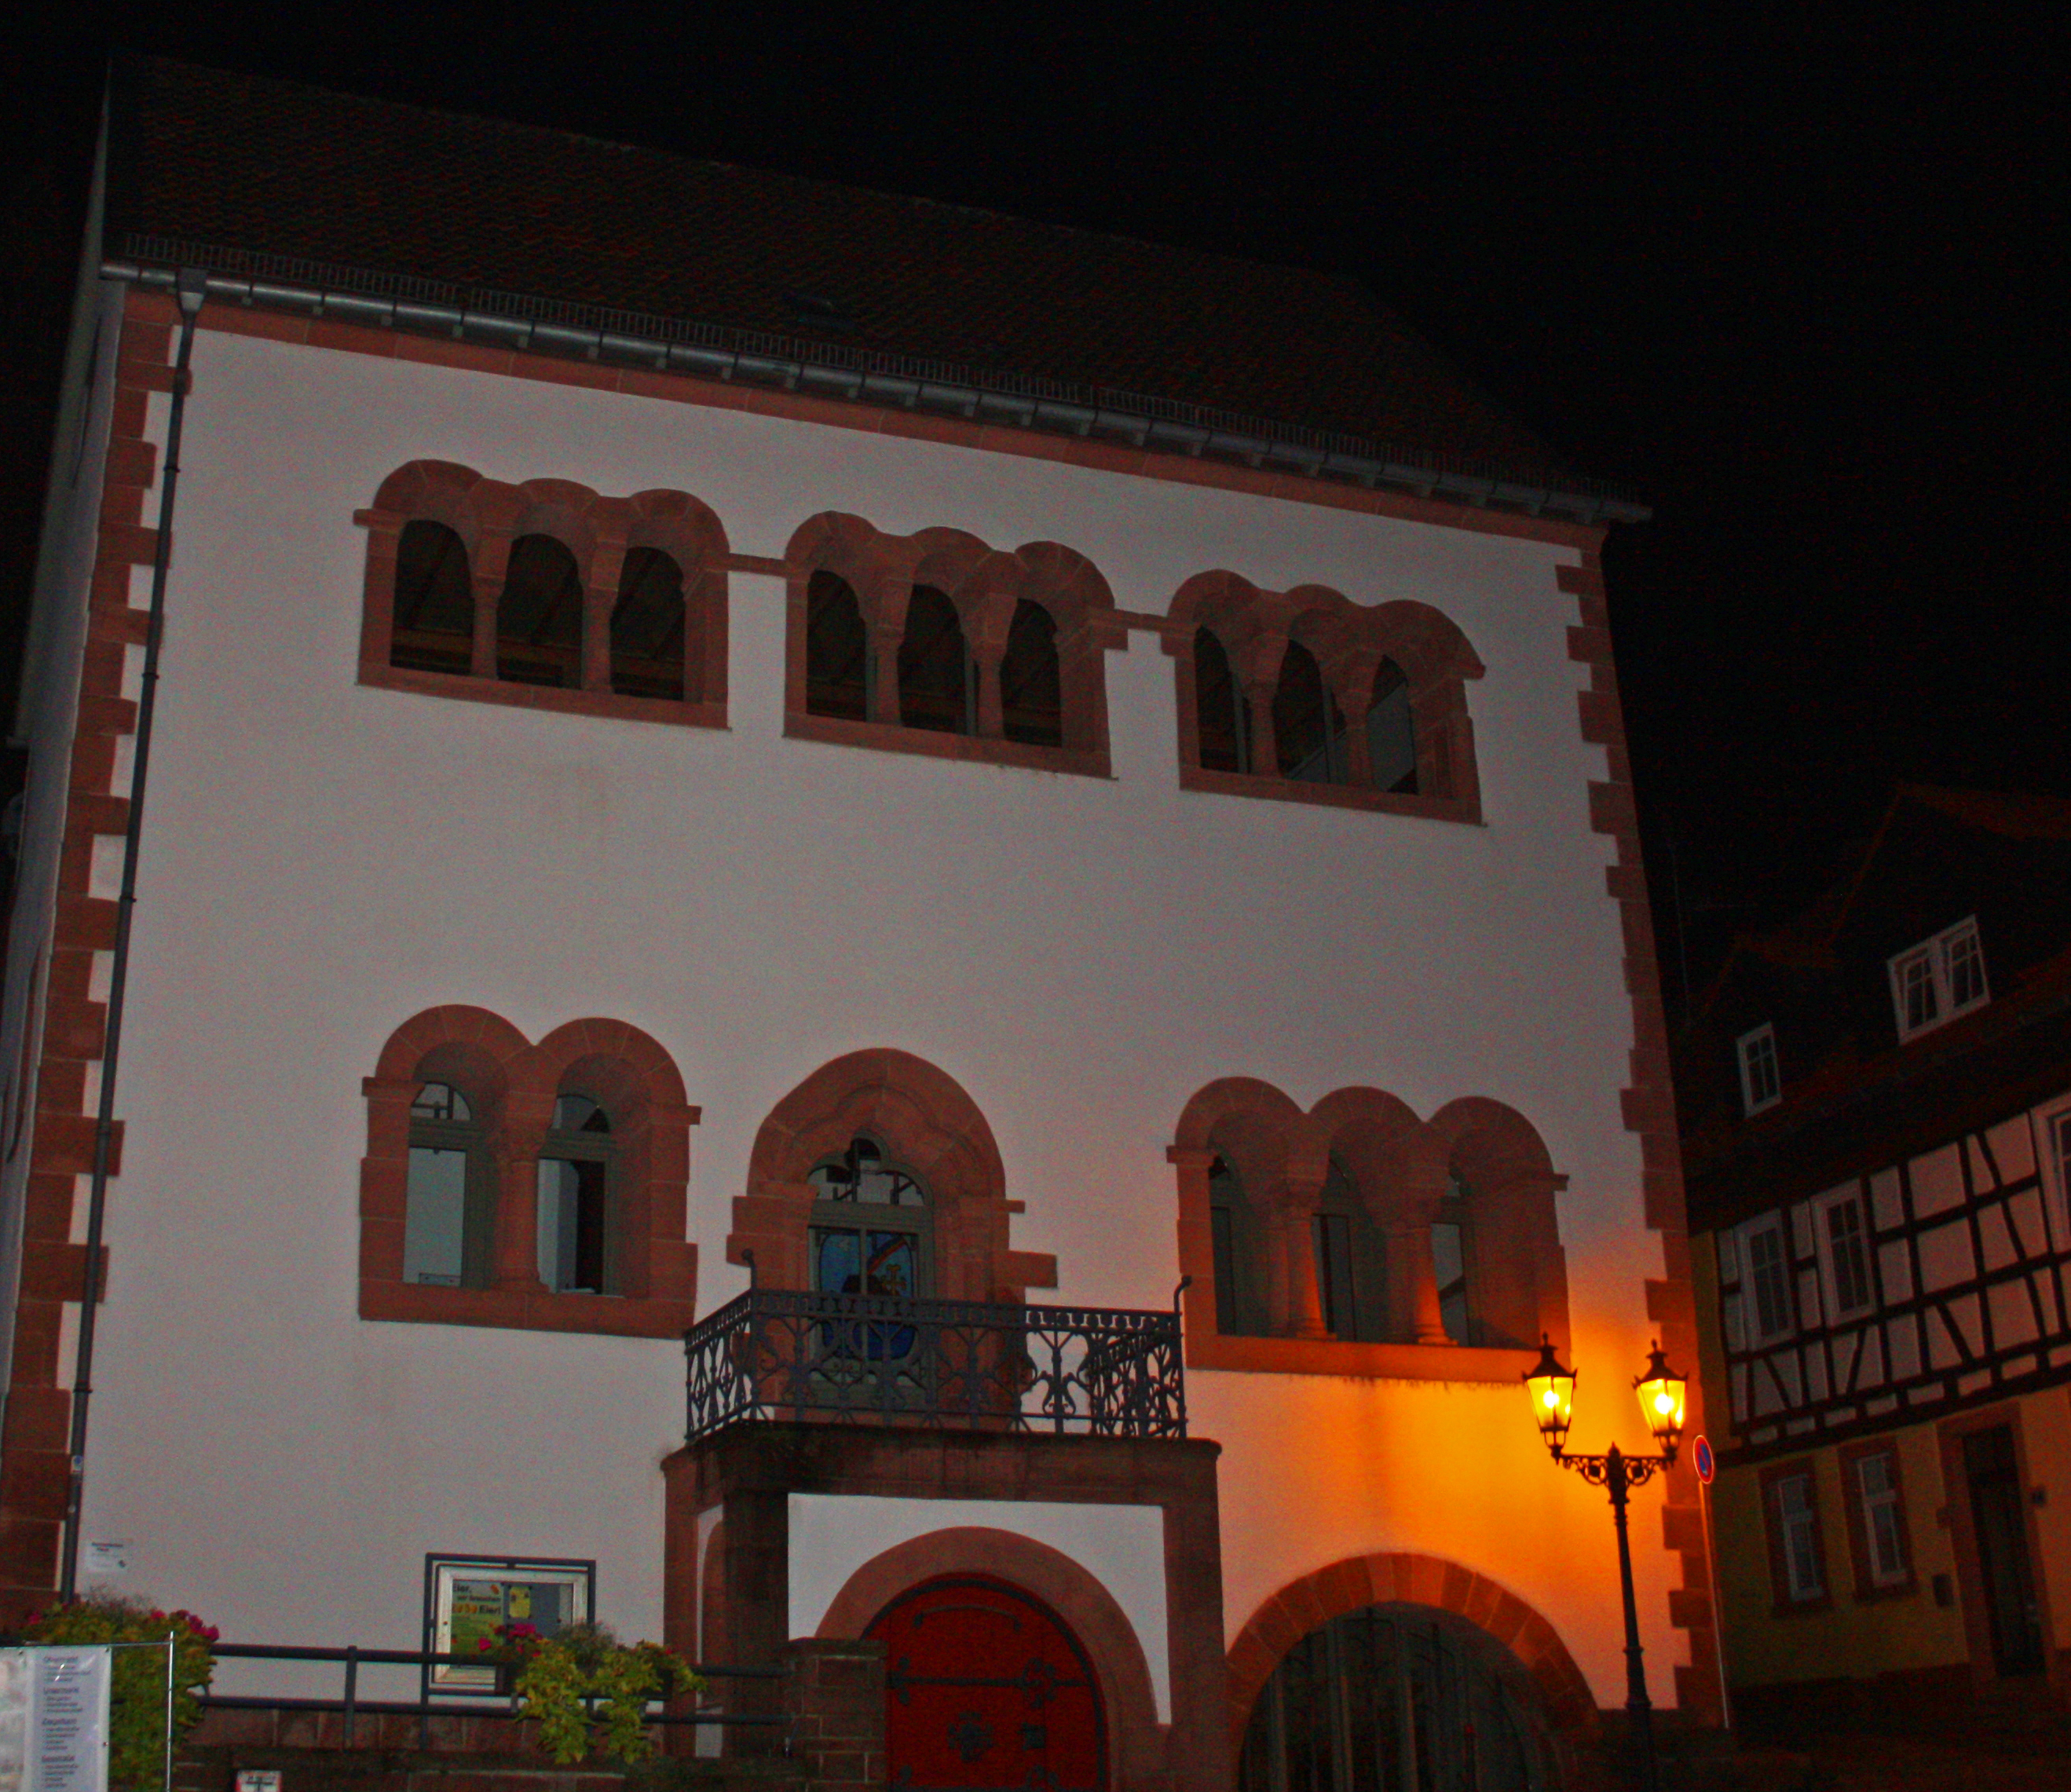 Das Romanische Haus in Gelnhausen.